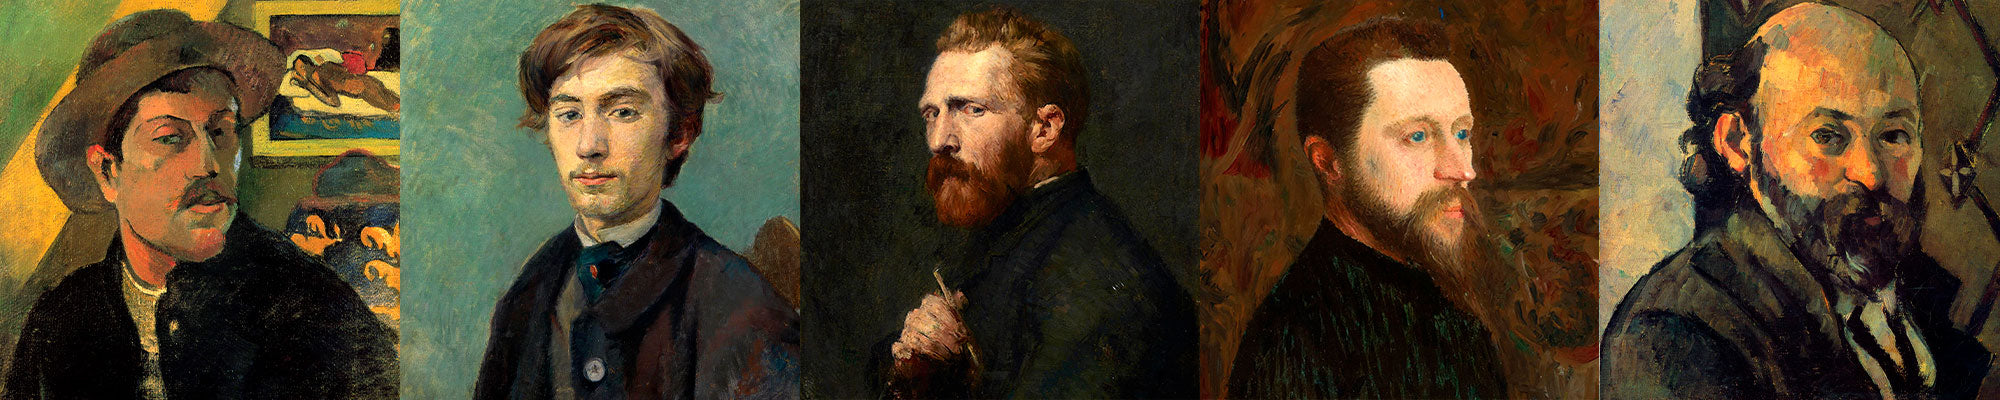 La relación de Van Gogh con otros artistas de su época